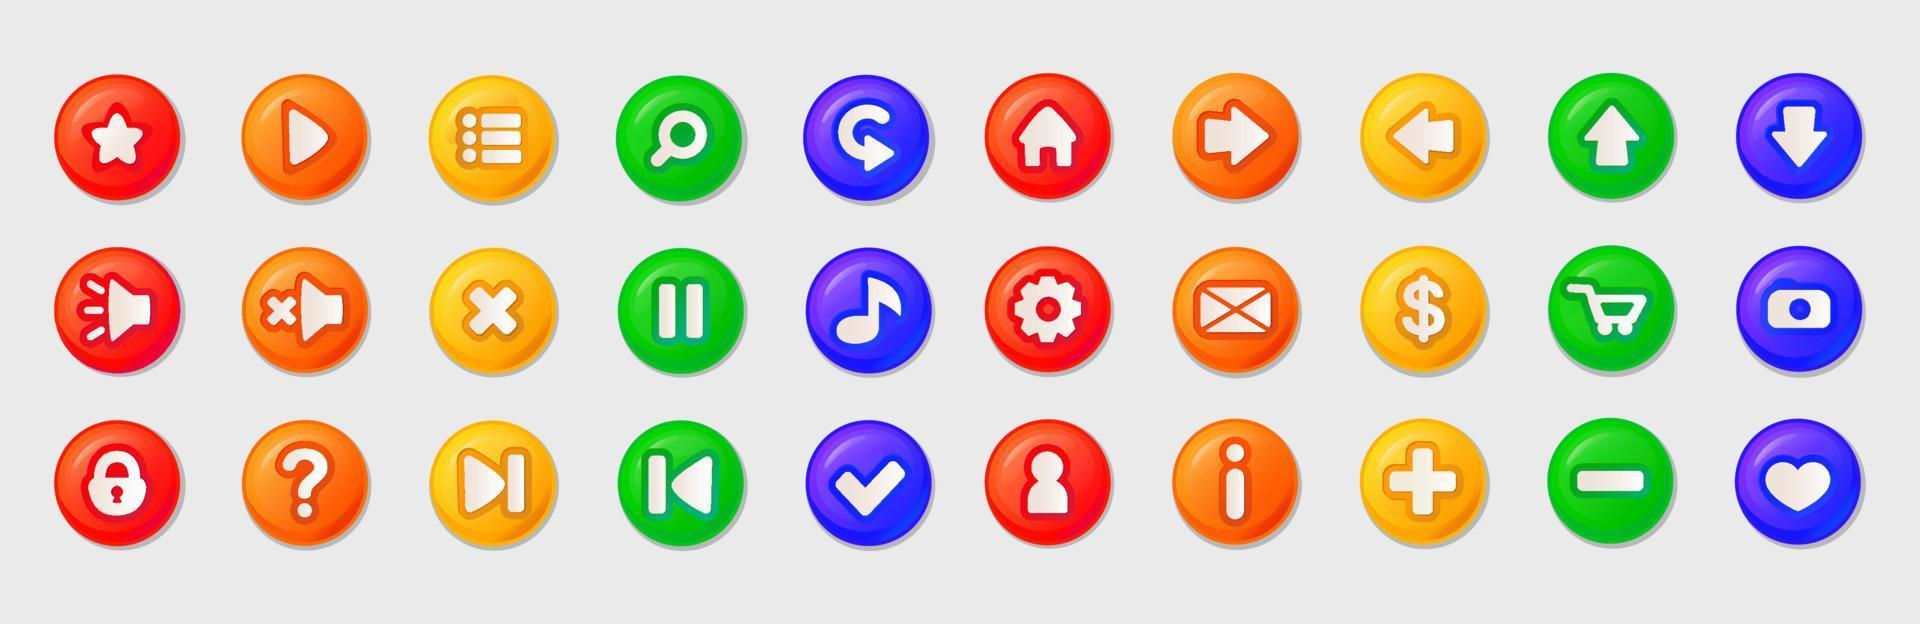 botones multicolores para juegos. estilo de dibujos animados vector